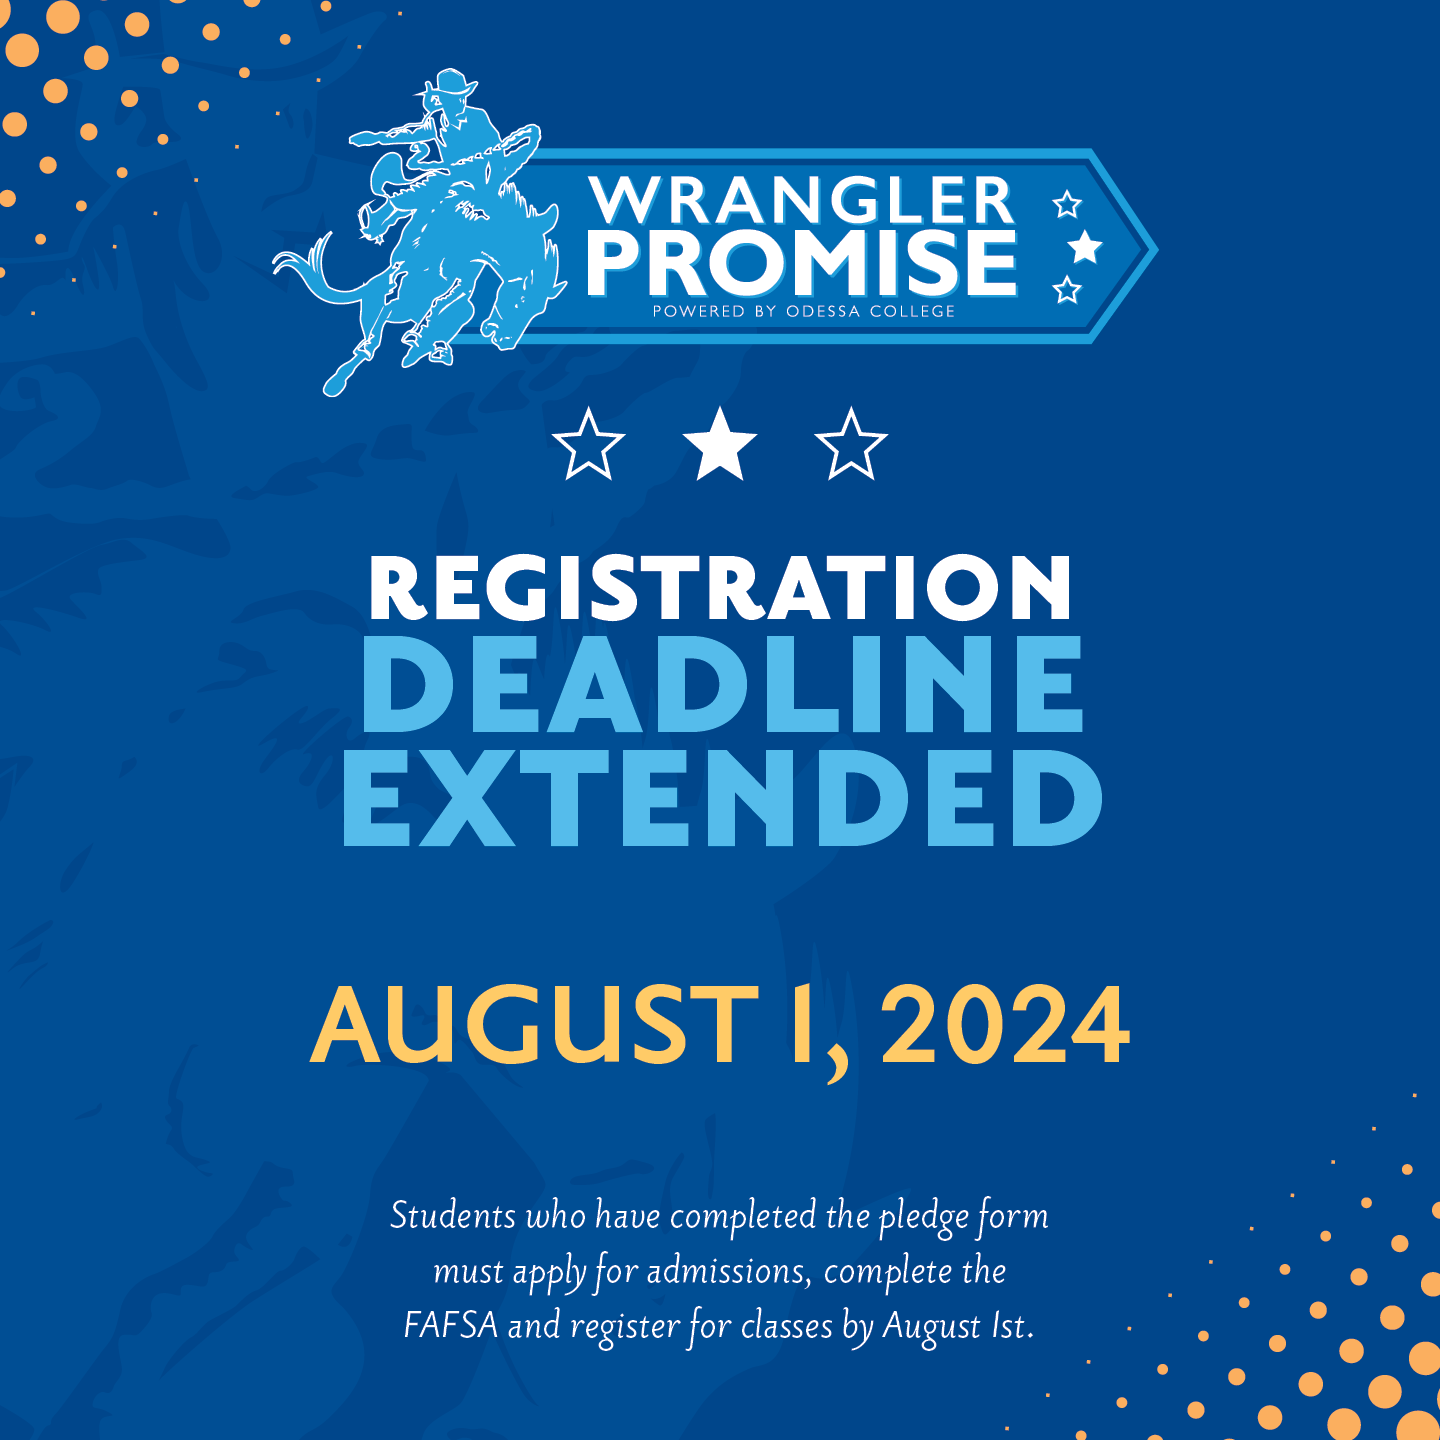 Wrangler Promise Deadline Extended